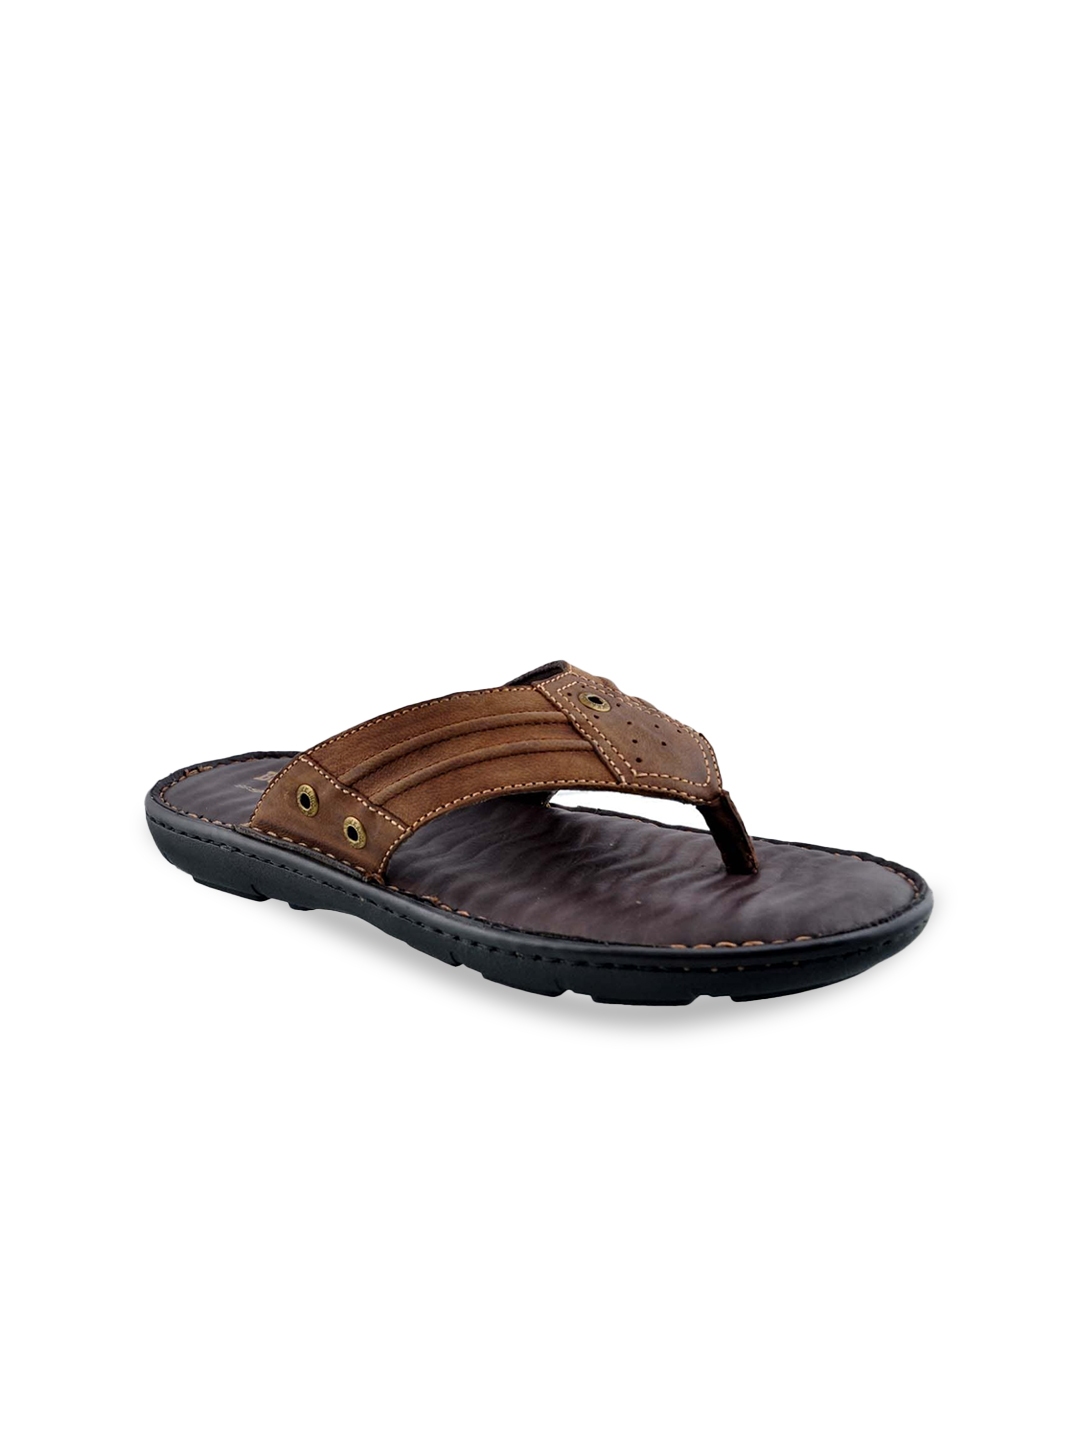 Buy Buckaroo Men Brown & Black Leather Comfort Sandals - Sandals for ...